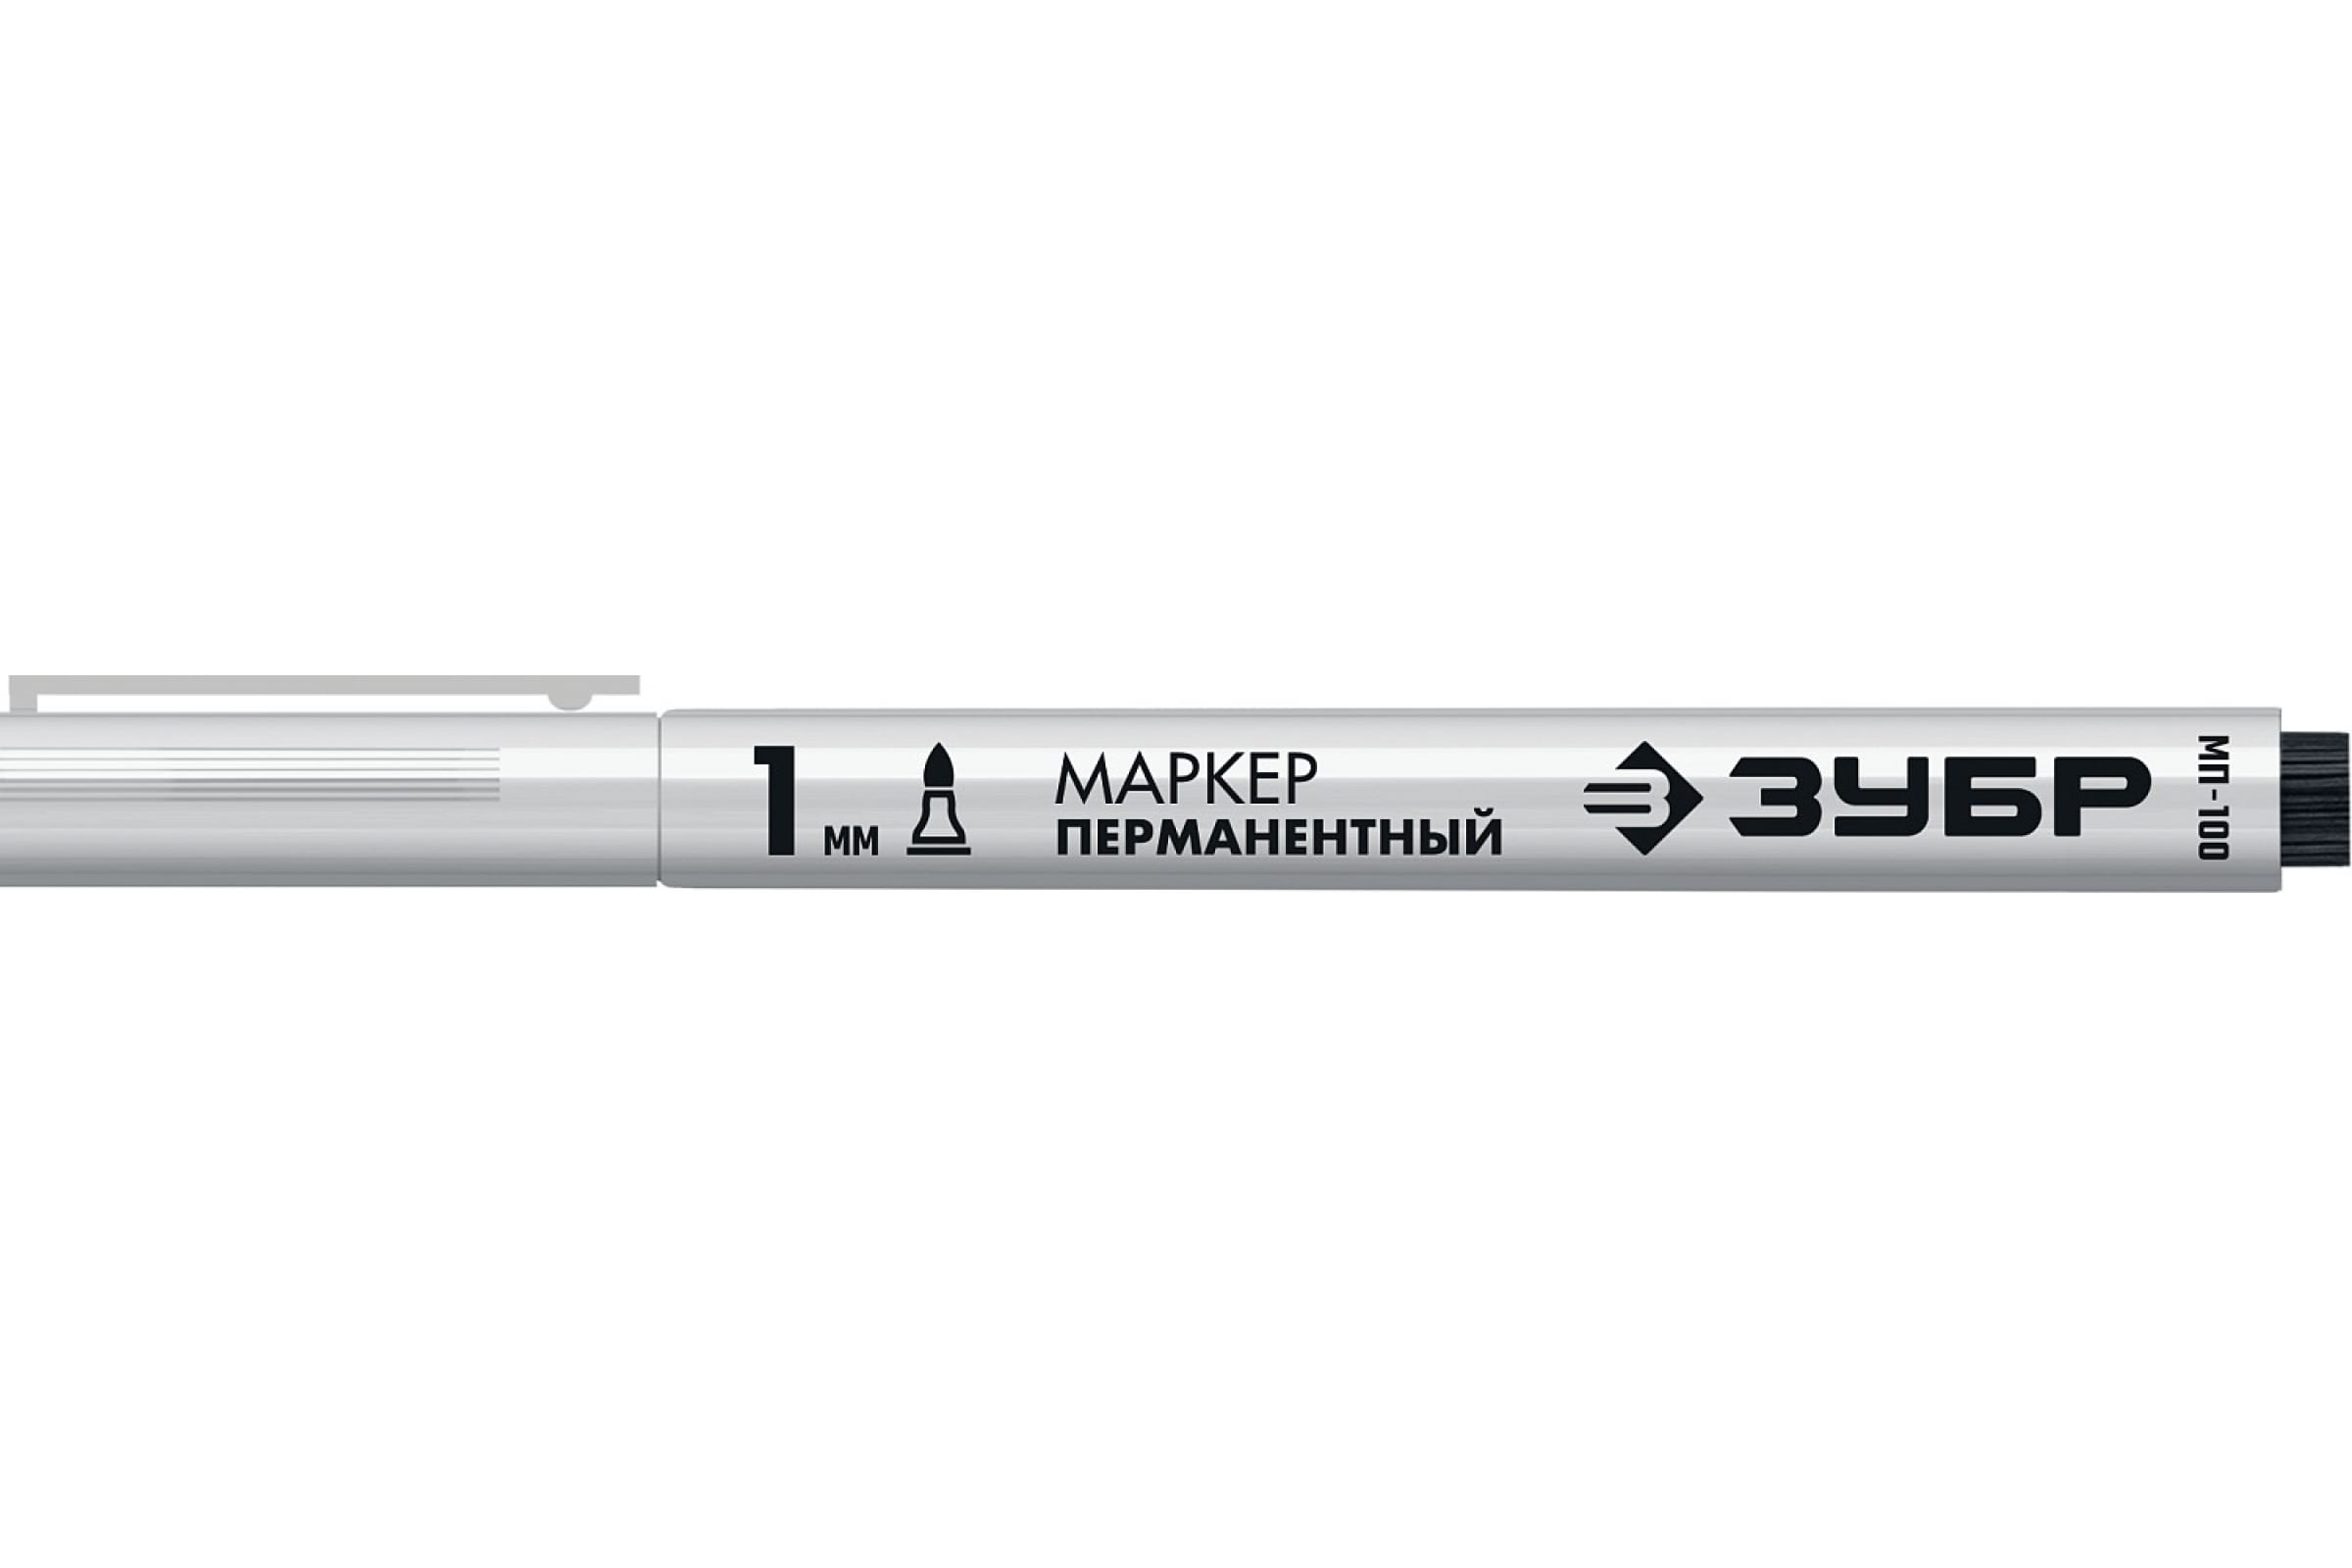 Маркер перманентный ЗУБР МП-100 белый 1 мм заостренный маркер attache для любых поверхностей от 20 до 40с белый 2 штуки